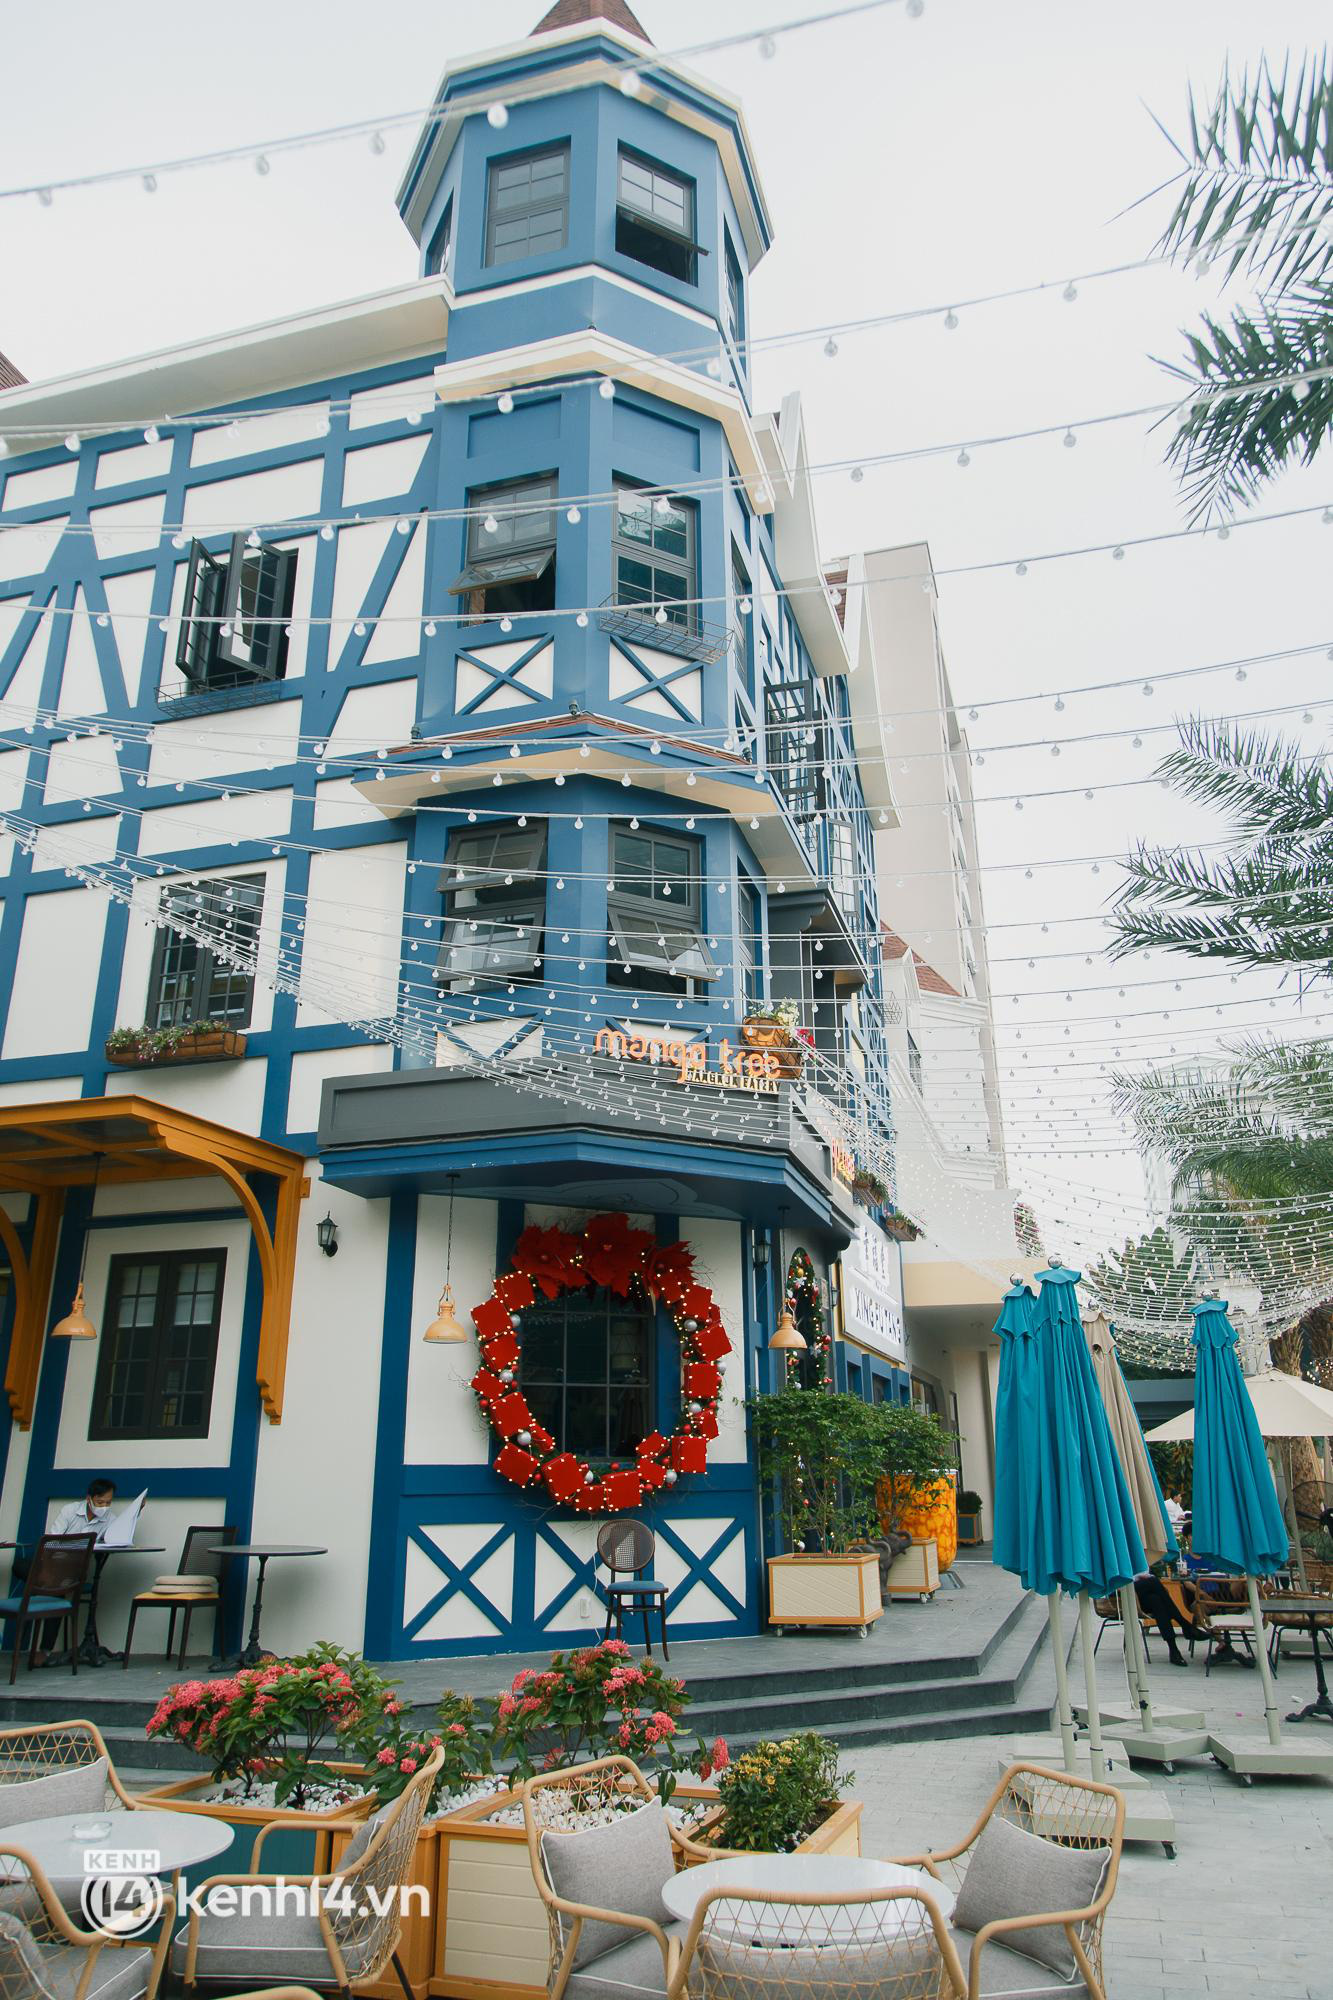 Hé lộ loạt địa điểm siêu đẹp mùa Giáng sinh 2021 ở Sài Gòn: Số 1 mới toanh - hoành tráng từ cái nhìn đầu tiên! - Ảnh 8.